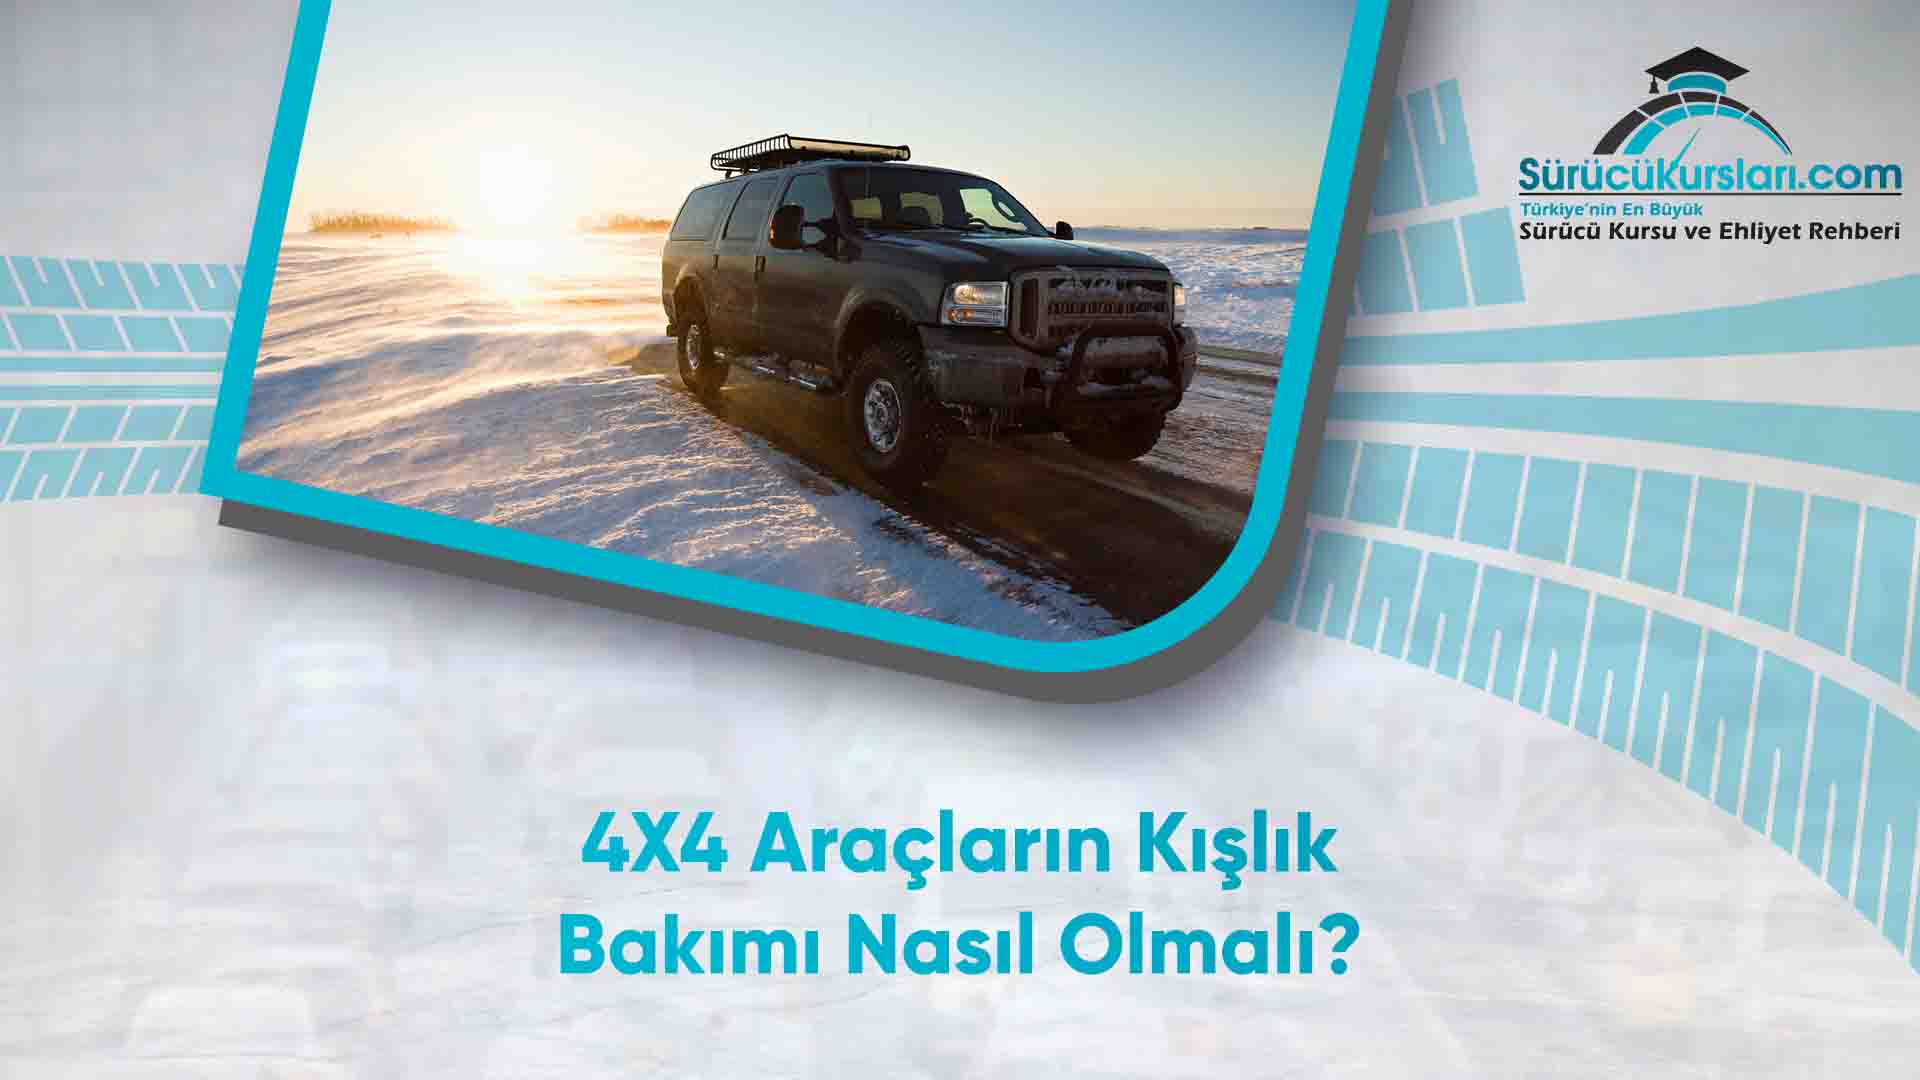 4X4 Araçların Kışlık Bakımı Nasıl Olmalı